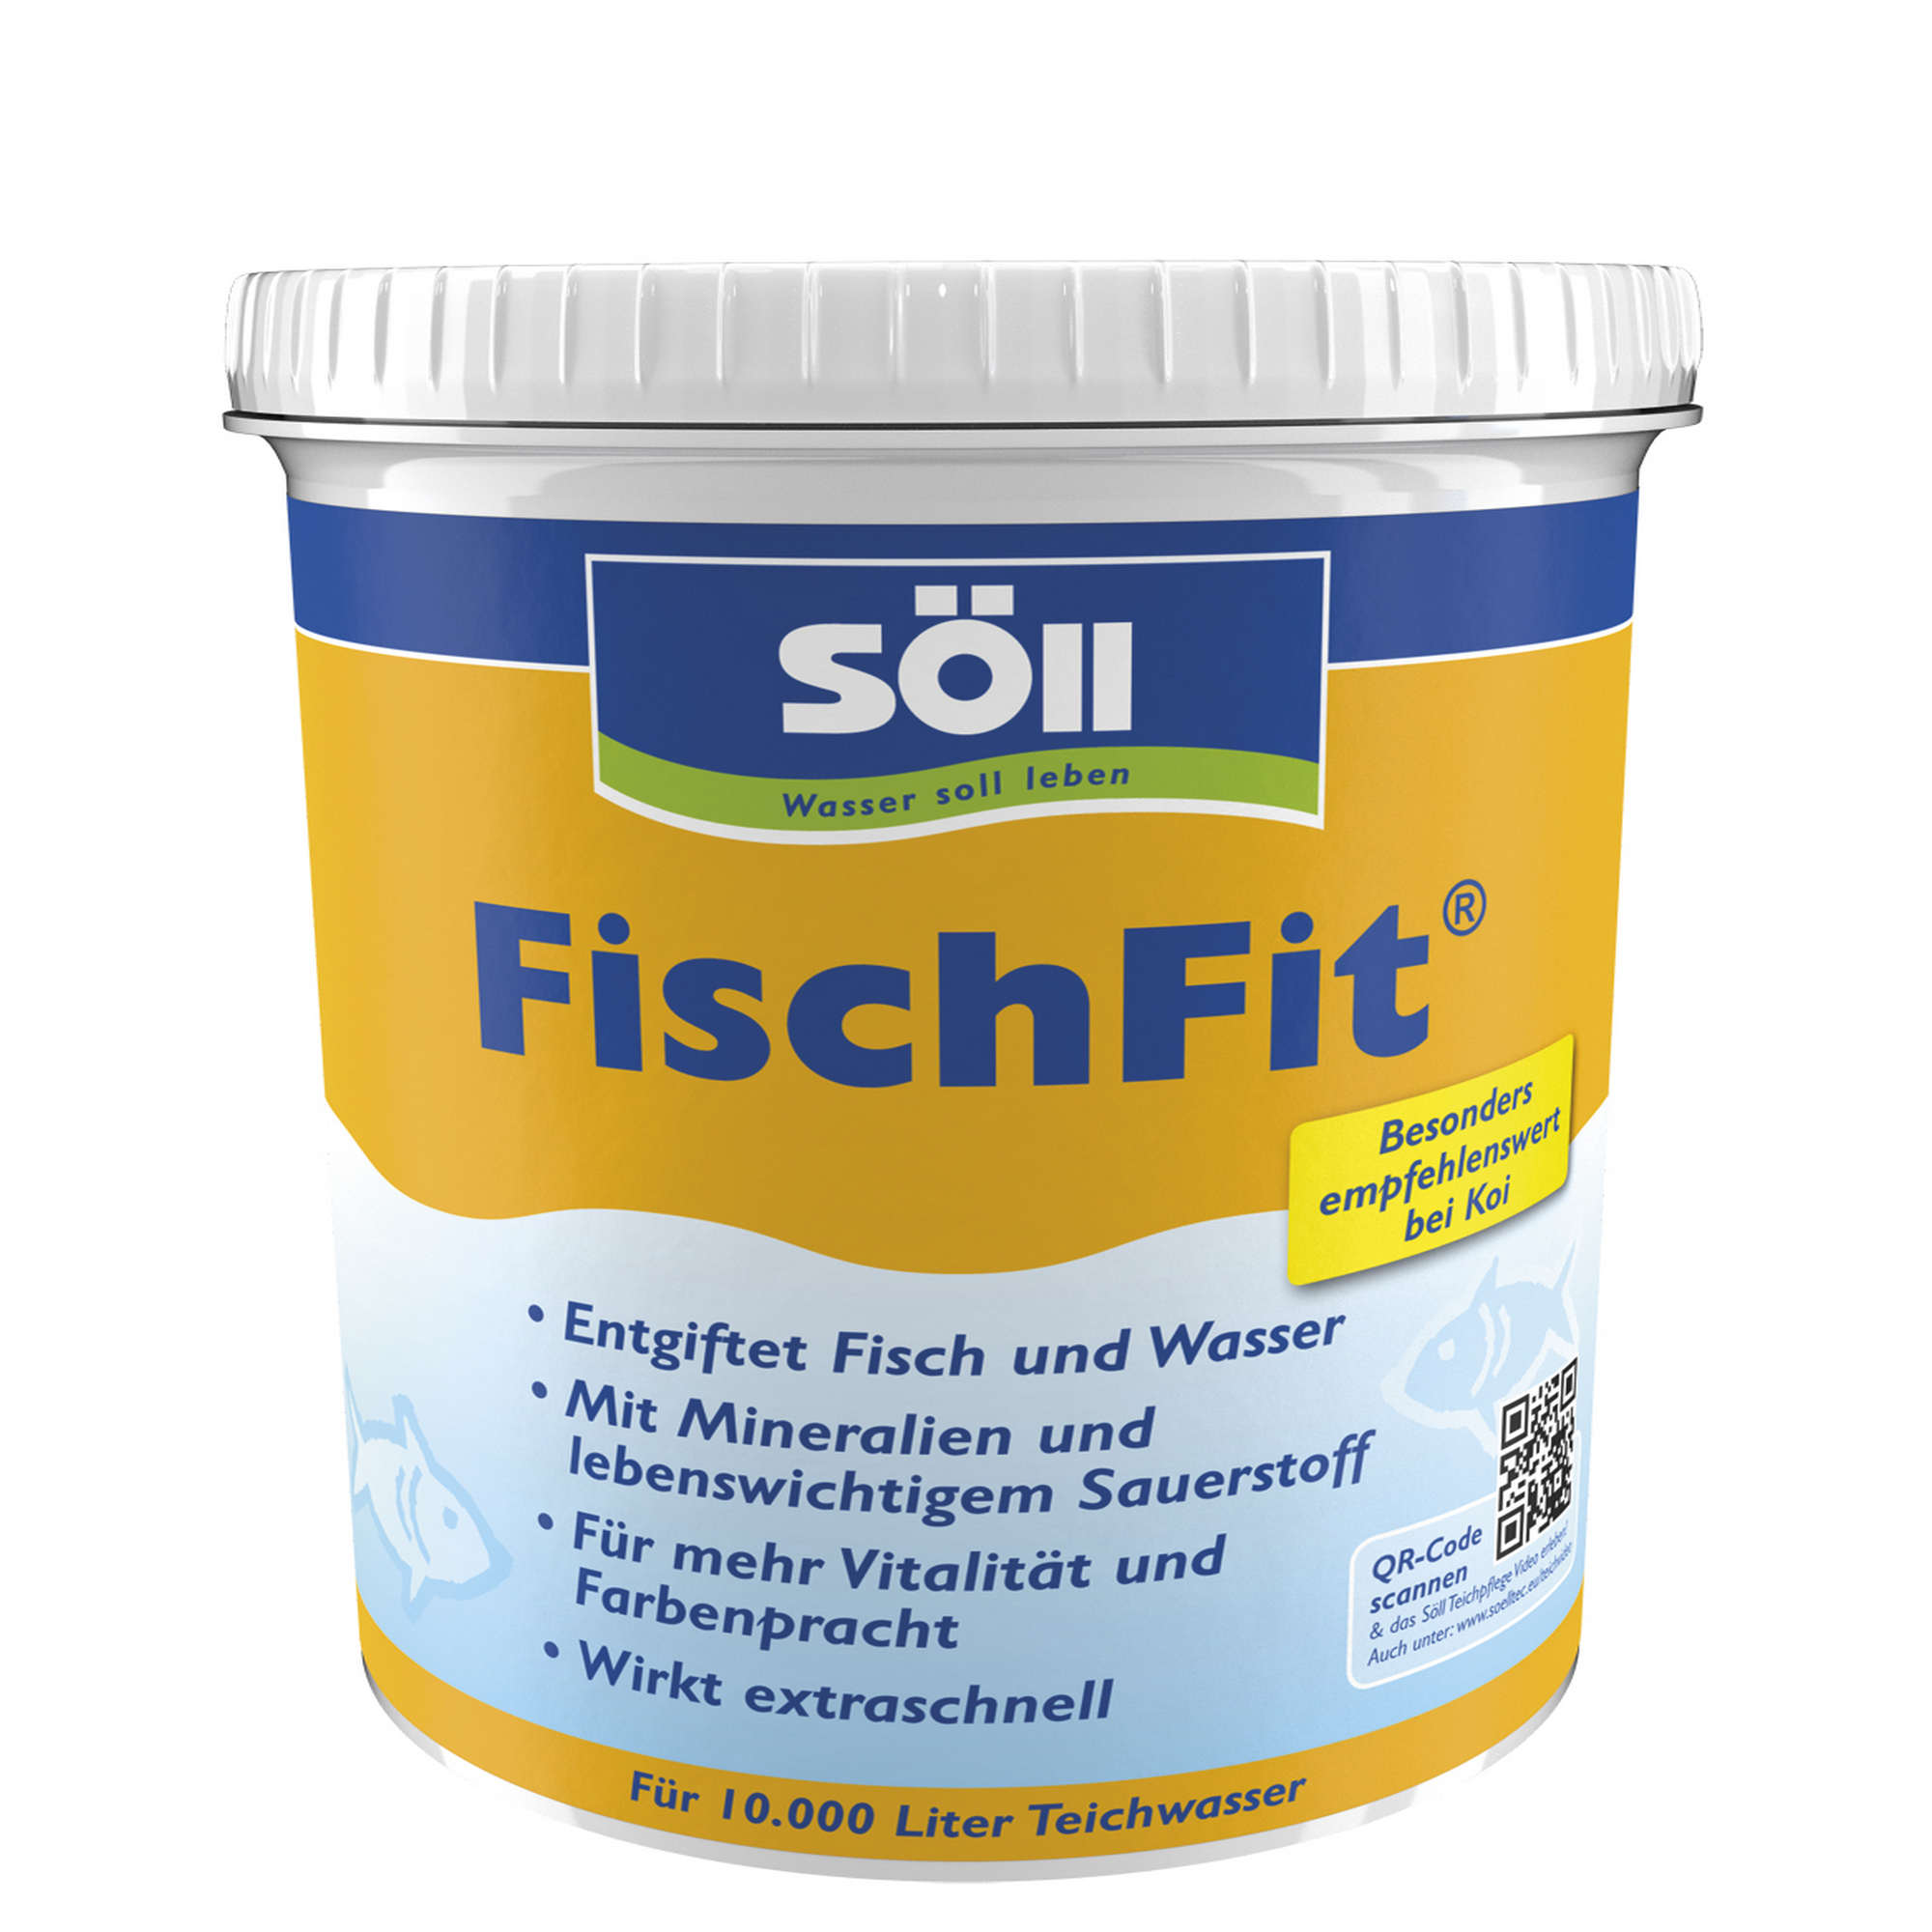 FischFit 1 kg + product picture